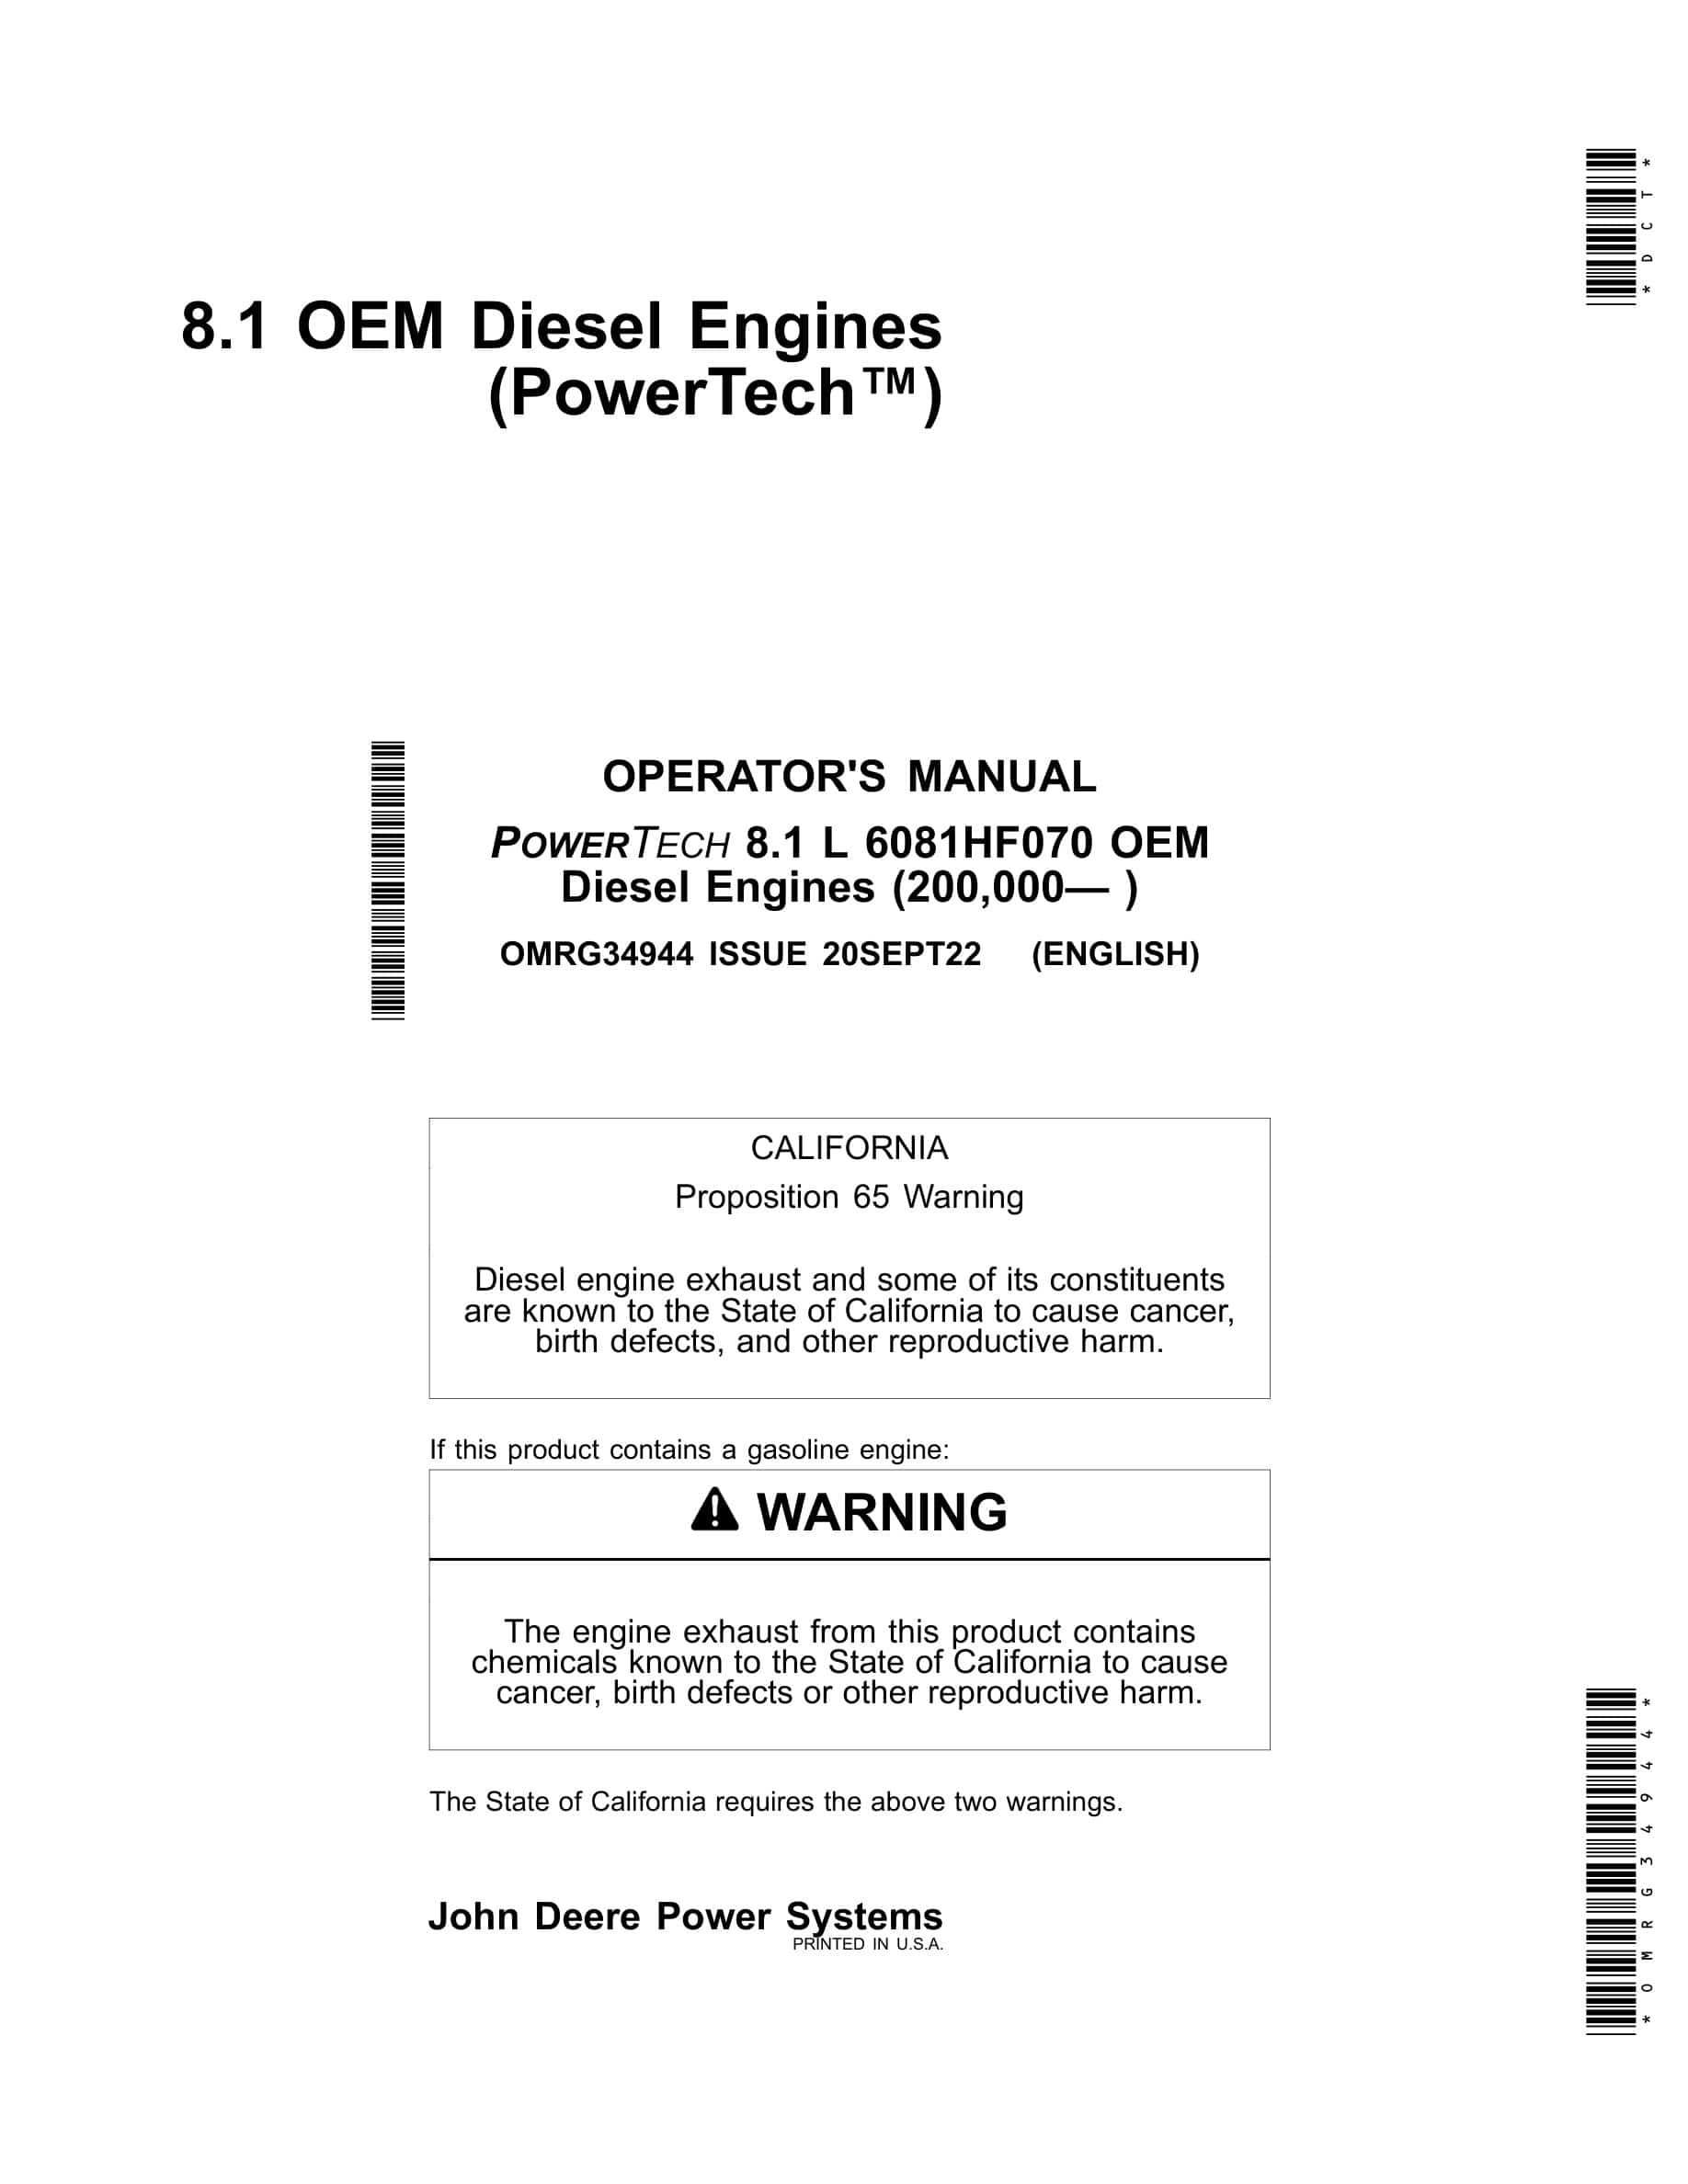 John Deere PowerTech 8.1 L 6081HF070 OEM Diesel Engines Operator Manual OMRG34944-1